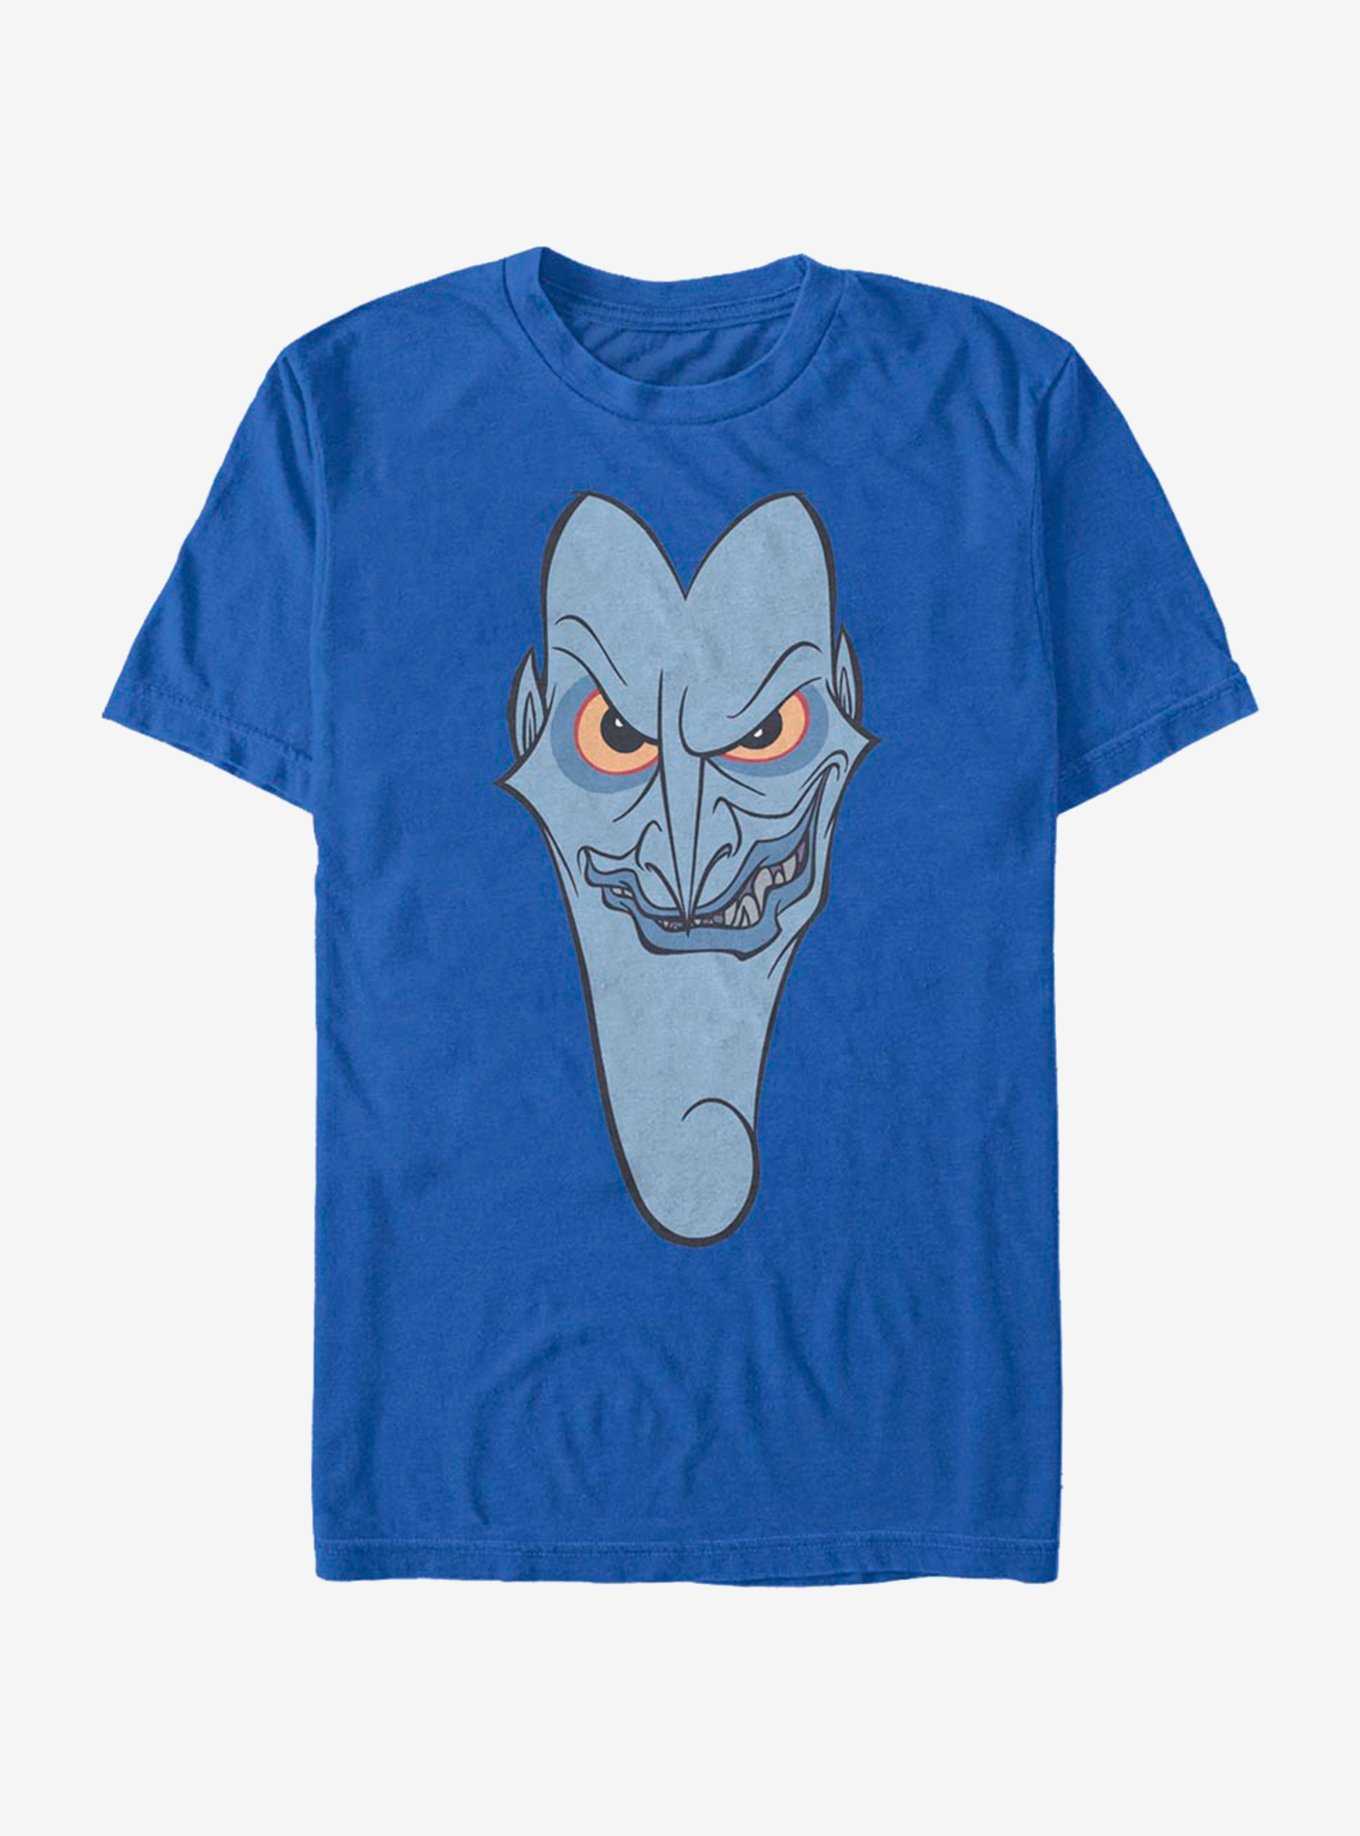 Disney Hercules Hades Big Face T-Shirt, , hi-res